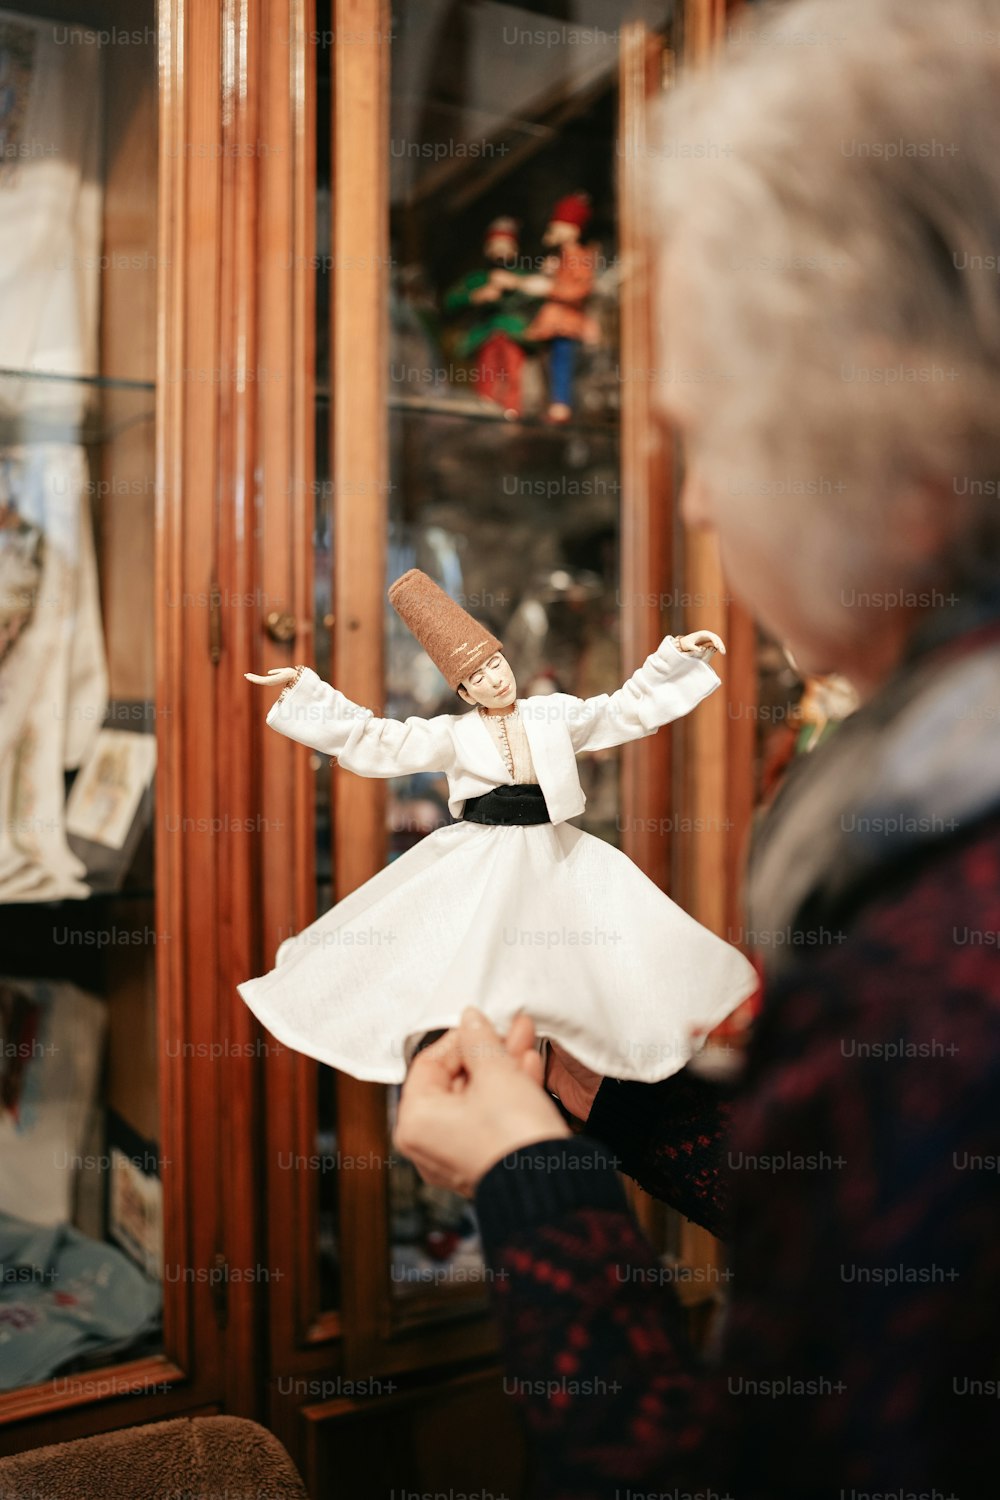 Una mujer sosteniendo una muñeca frente a una vitrina